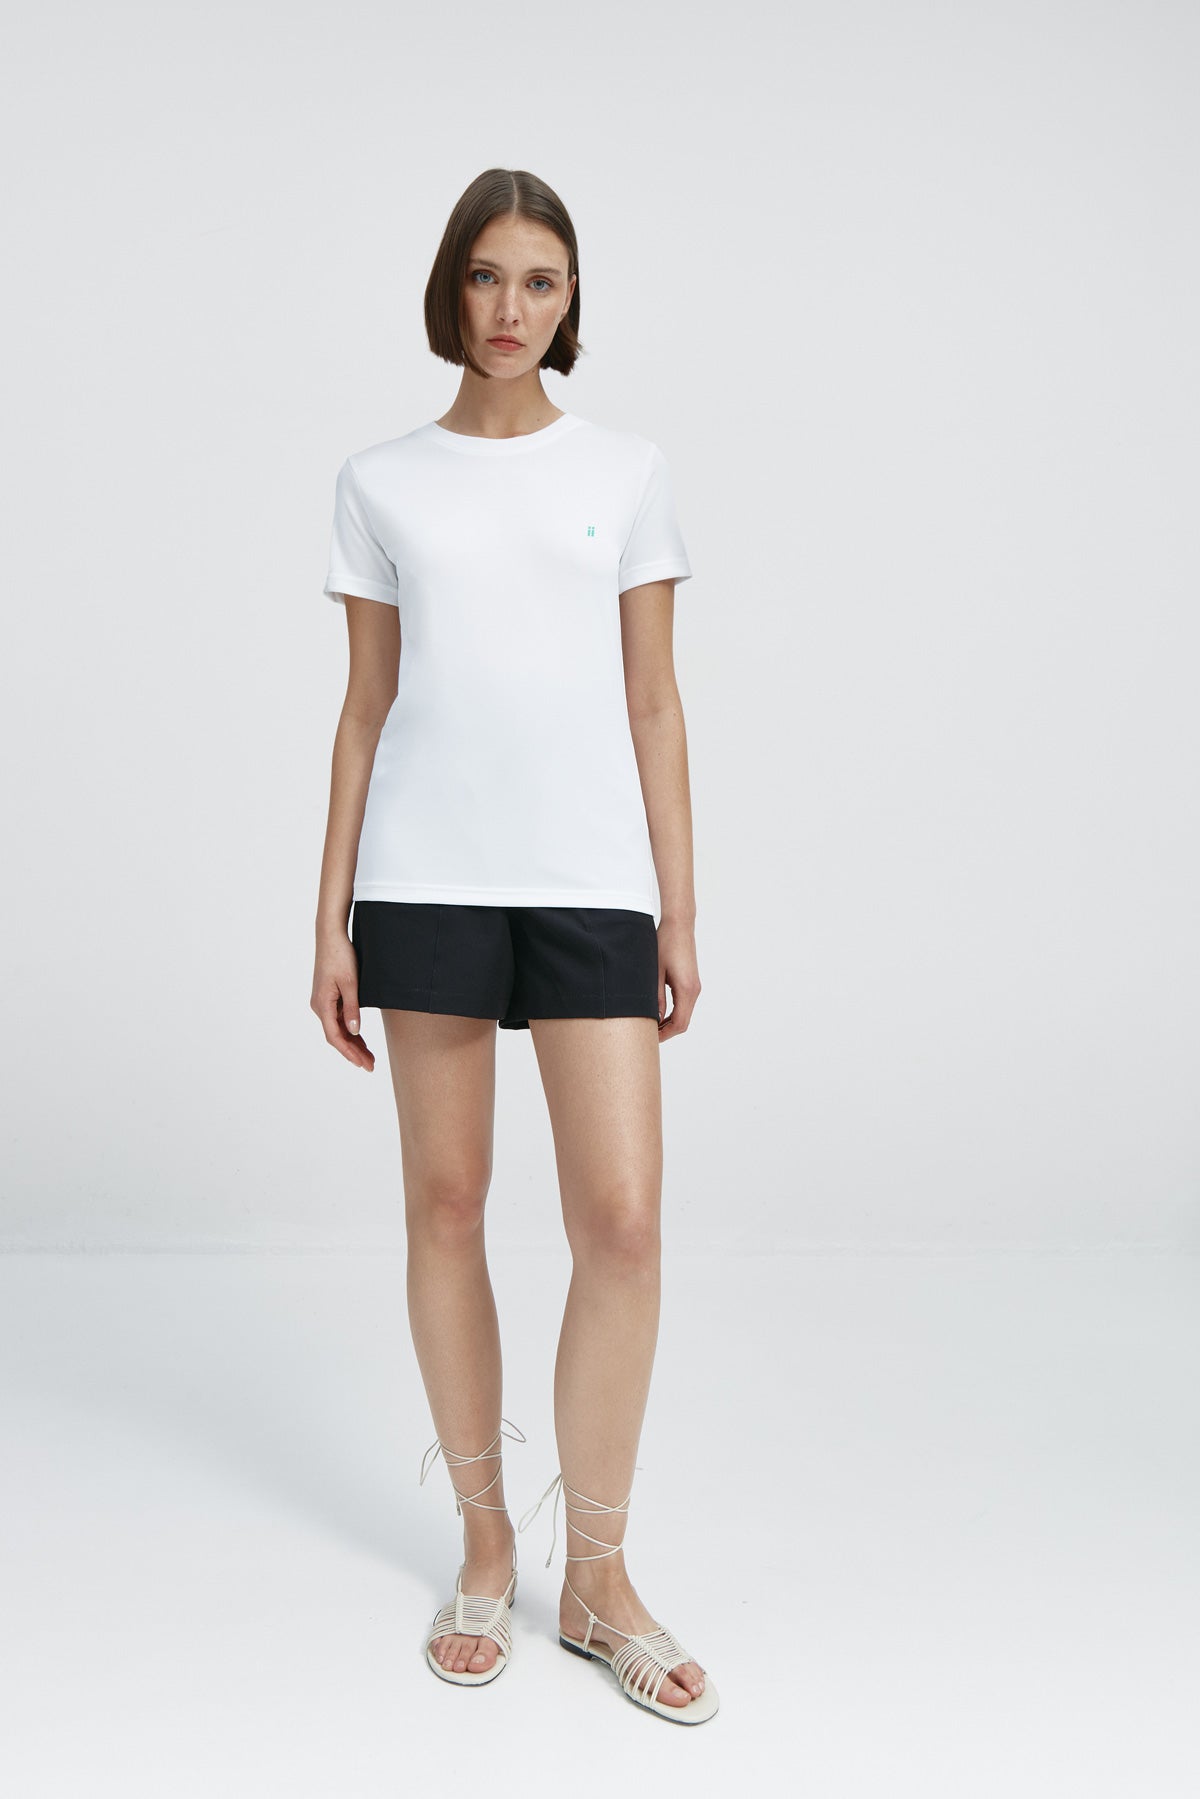 Camiseta básica de mujer blanca de manga corta, antiarrugas y antimanchas. 